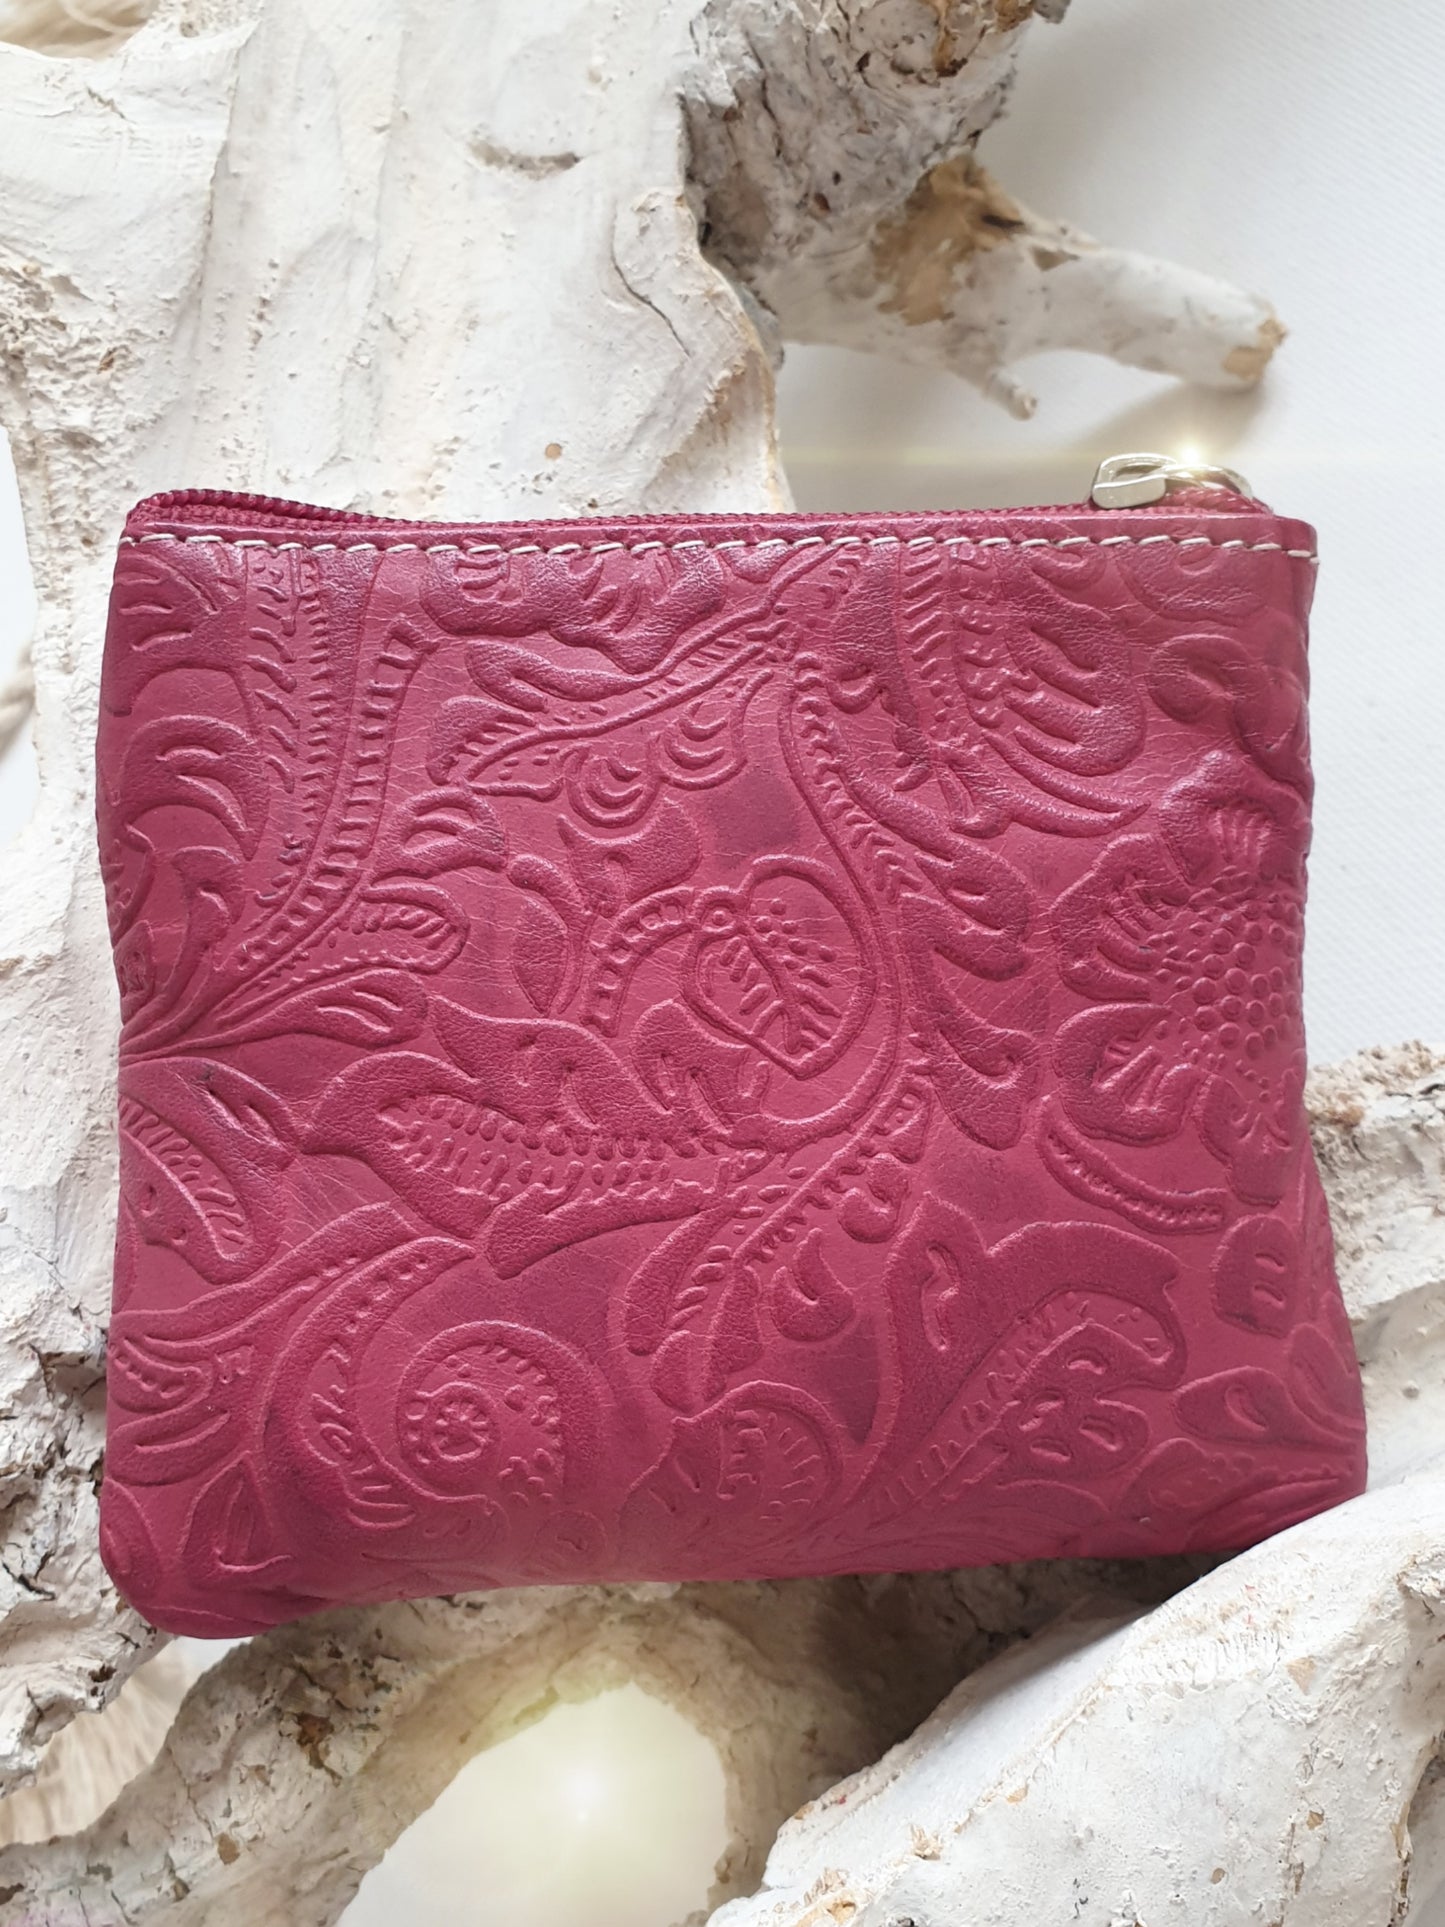 Schlüsselmäppchen BAG in Bag Schlüsselanhänger Leder pink mit Blumen Muster